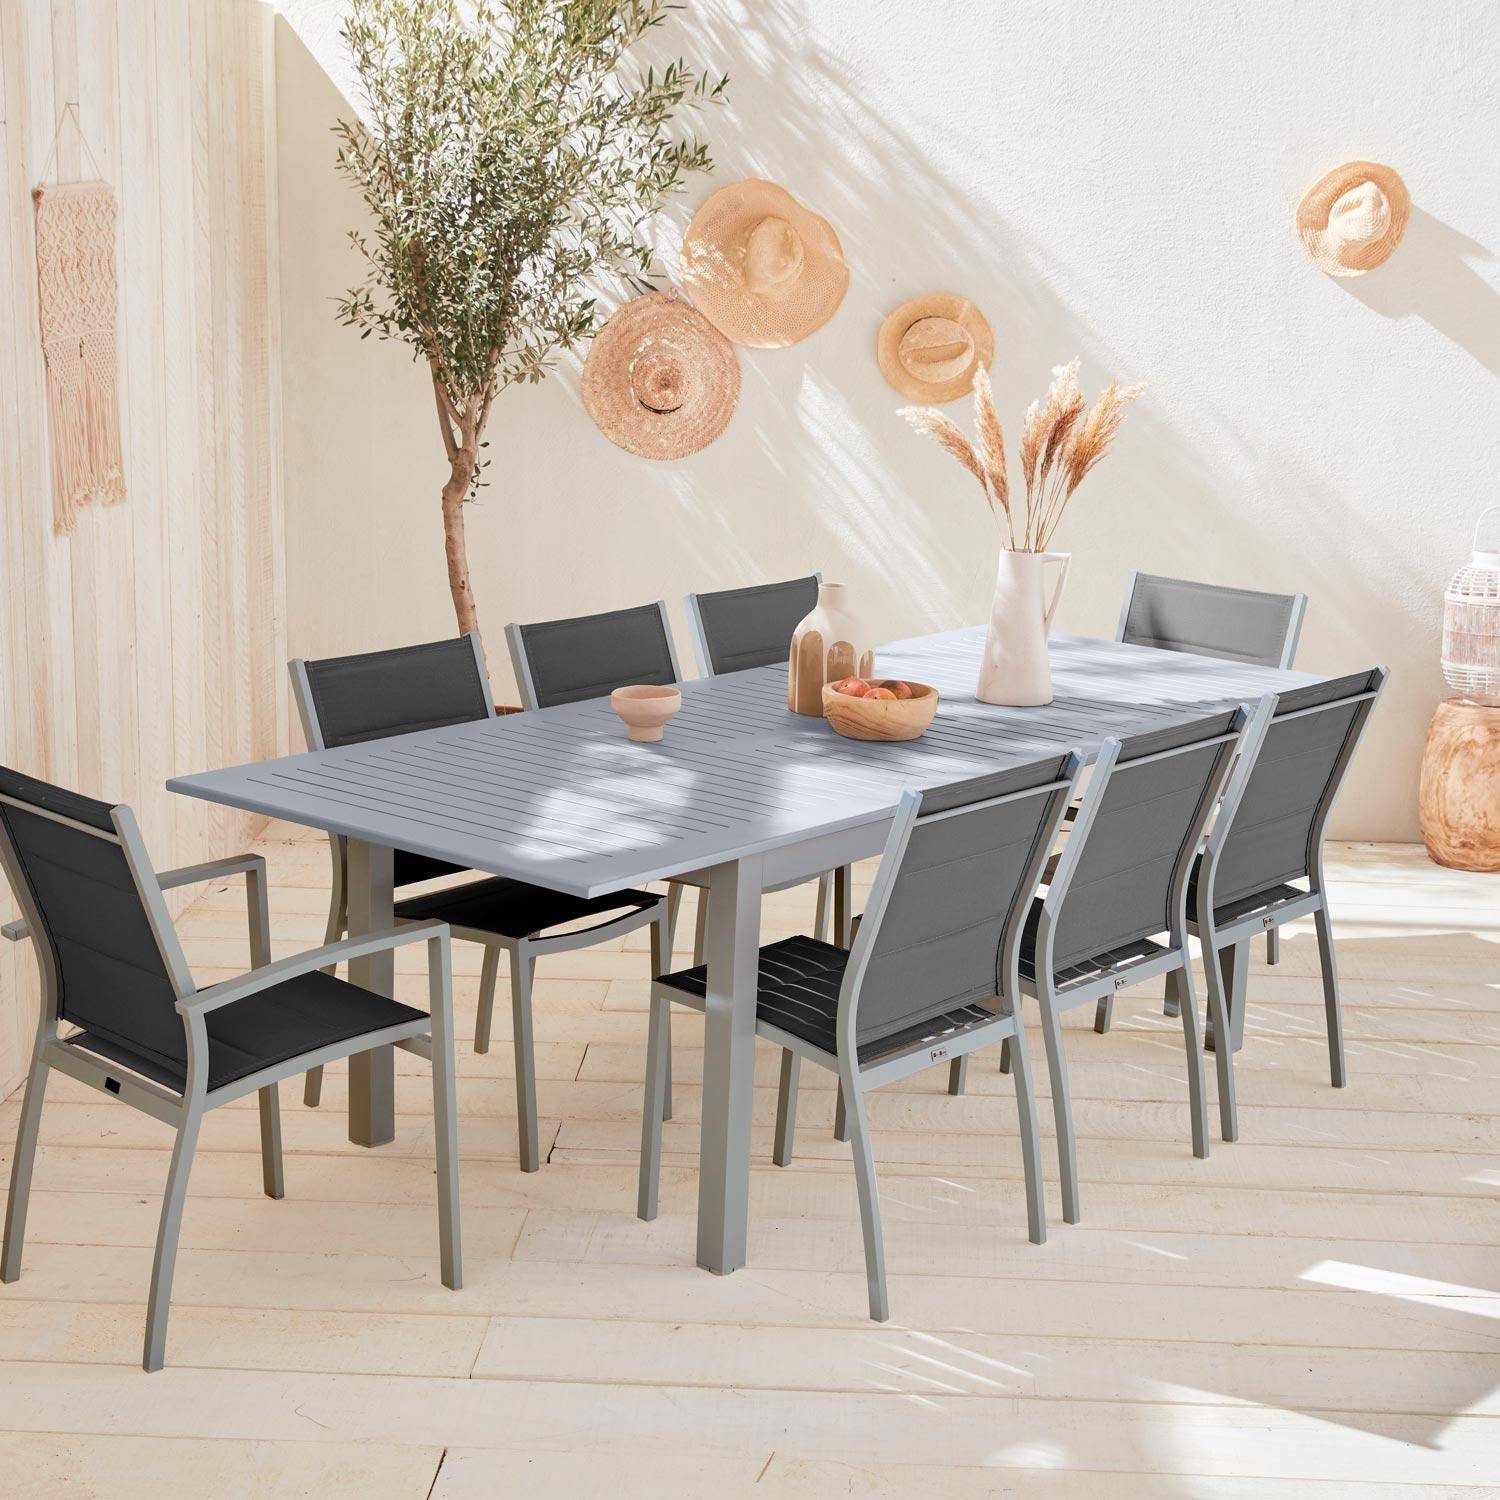 Set da giardino - modello: Chicago, colore: Grigio - Tavolo allungabile in alluminio, dimensioni: 175/245cm con prolunga e 8 sedute in textilene Photo1